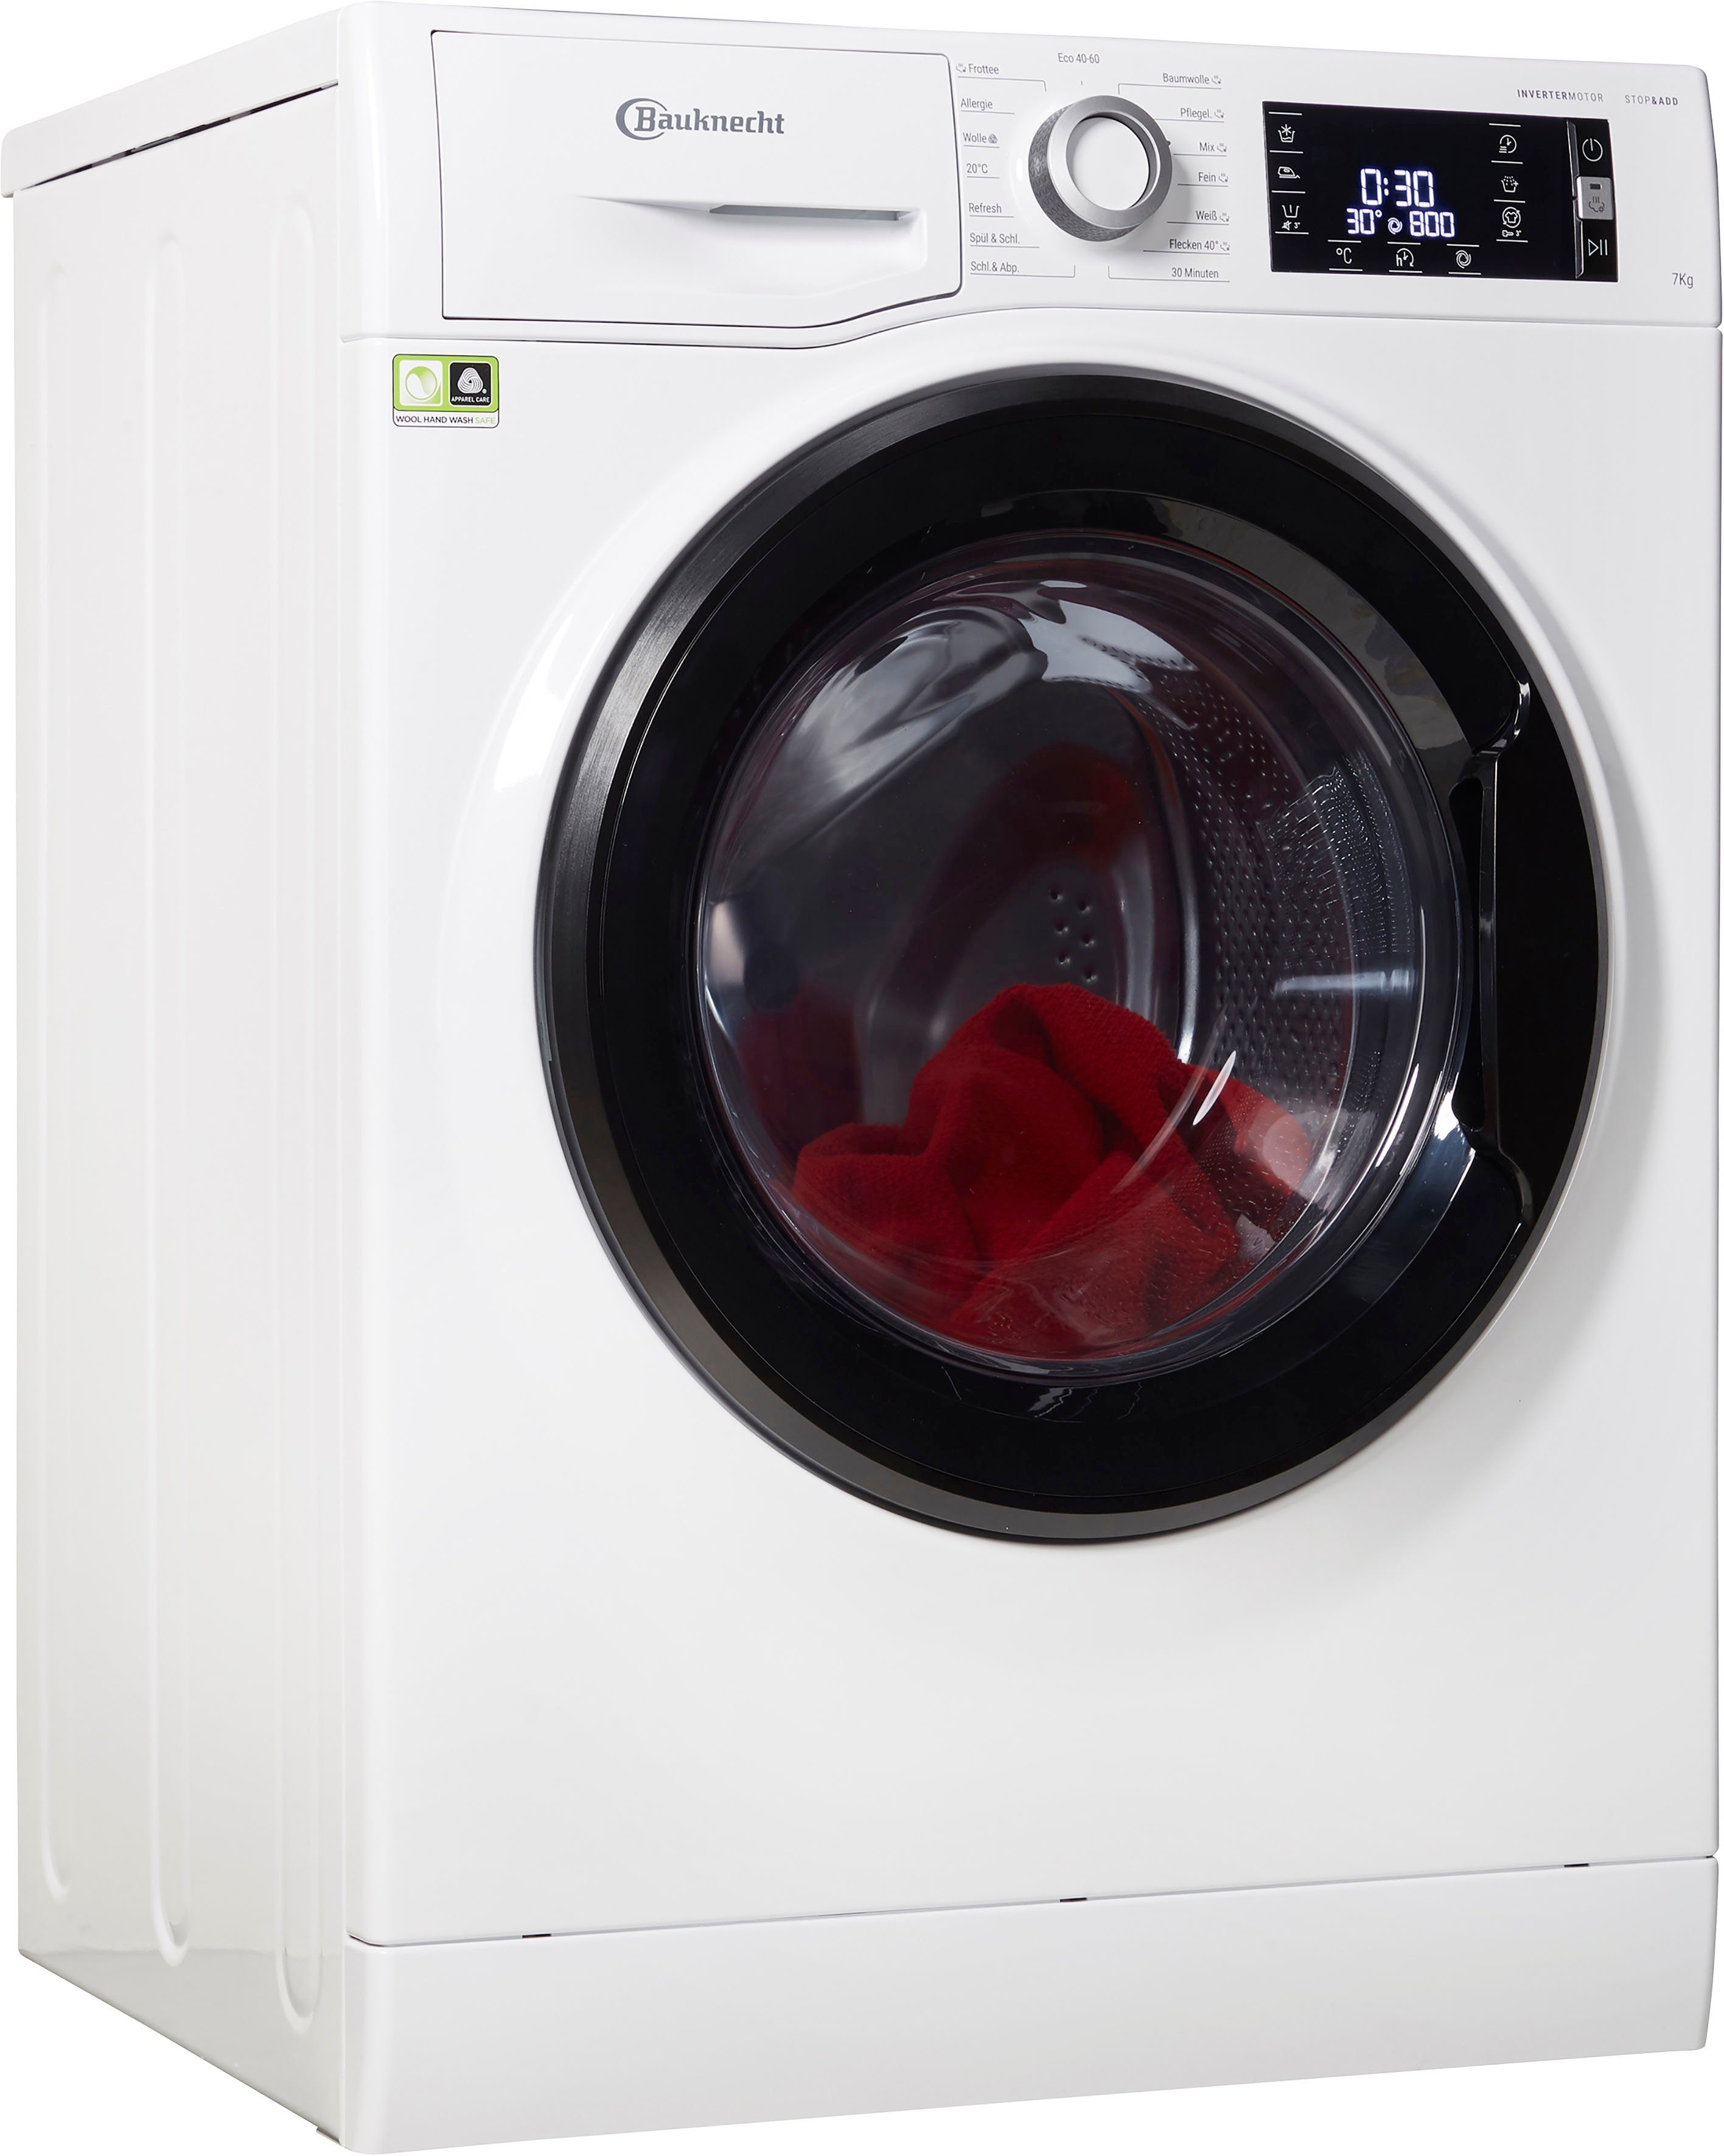 BAUKNECHT Waschmaschine WM Elite 722 C, 7 kg, 1400 U/min online kaufen |  OTTO